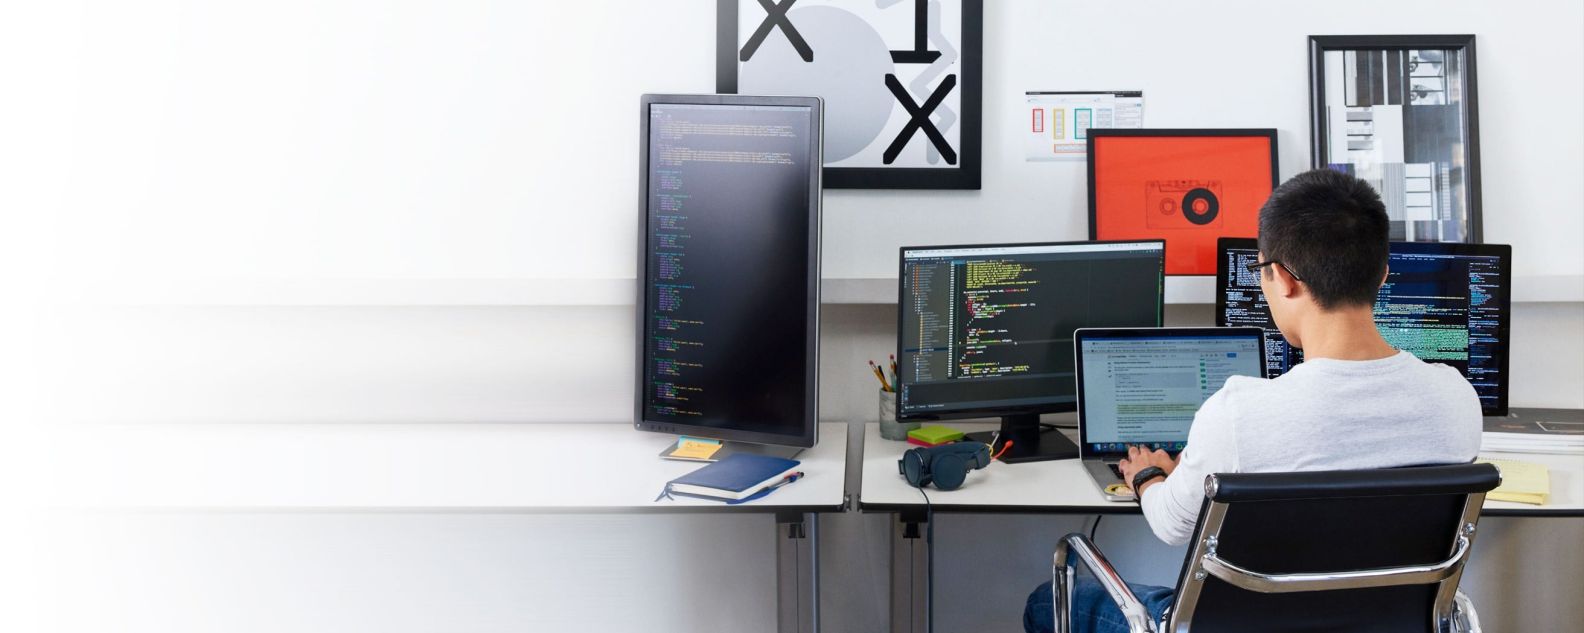 persona trabajando en una computadora y usando tres pantallas de monitor